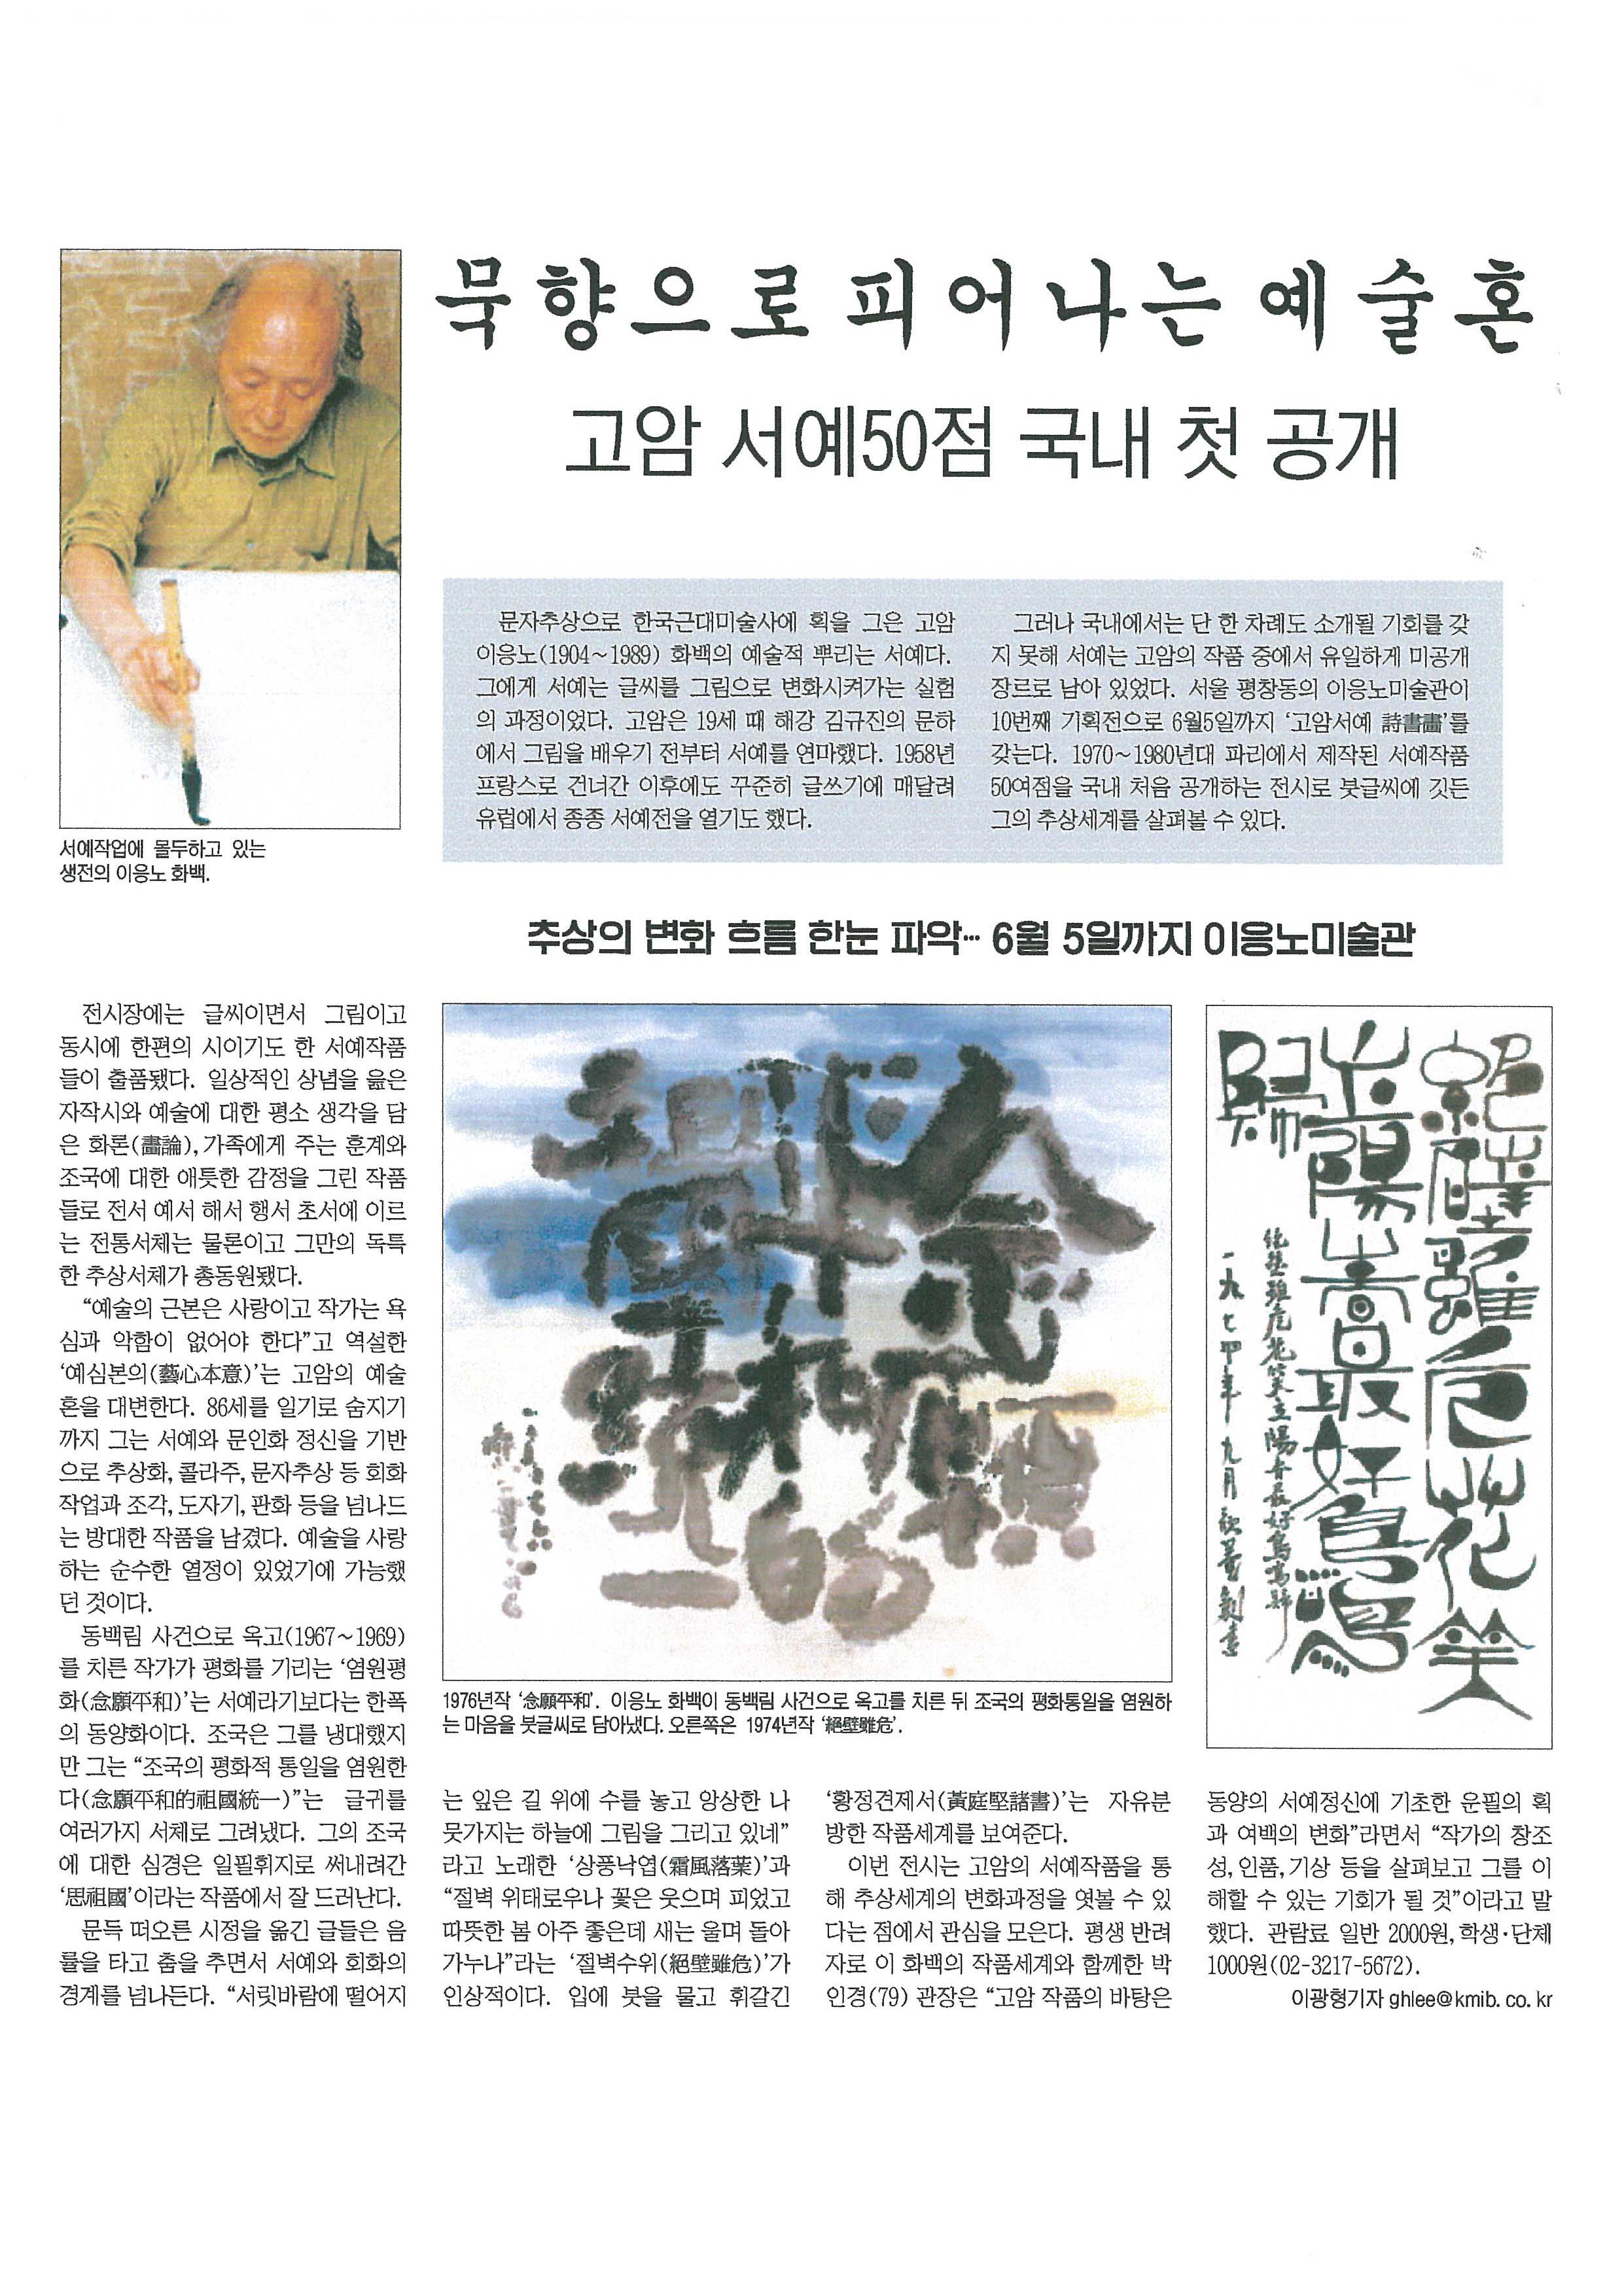 「묵향으로 피어나는 예술혼」, 『국민일보』